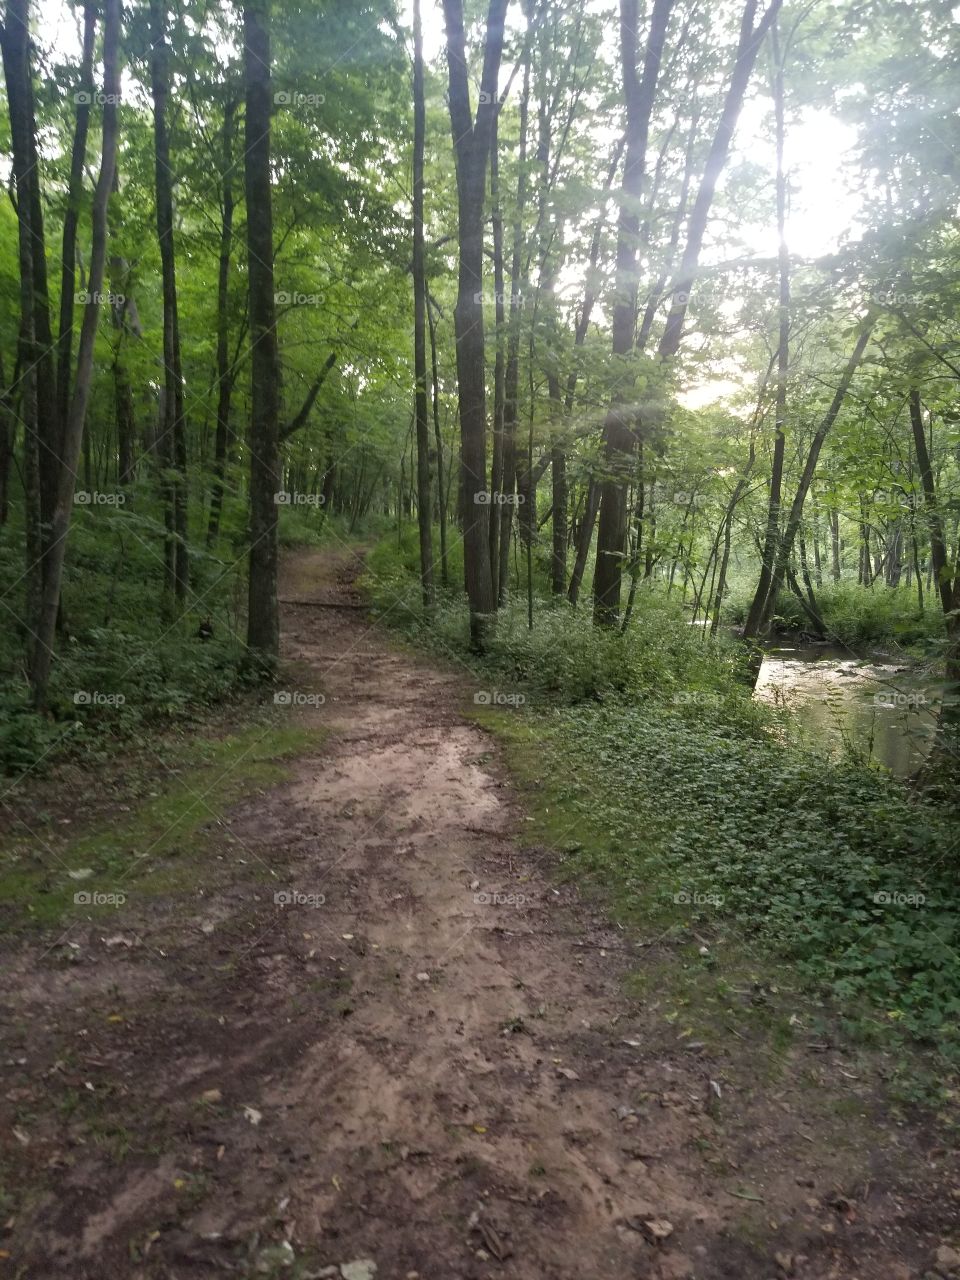 Path along a creek